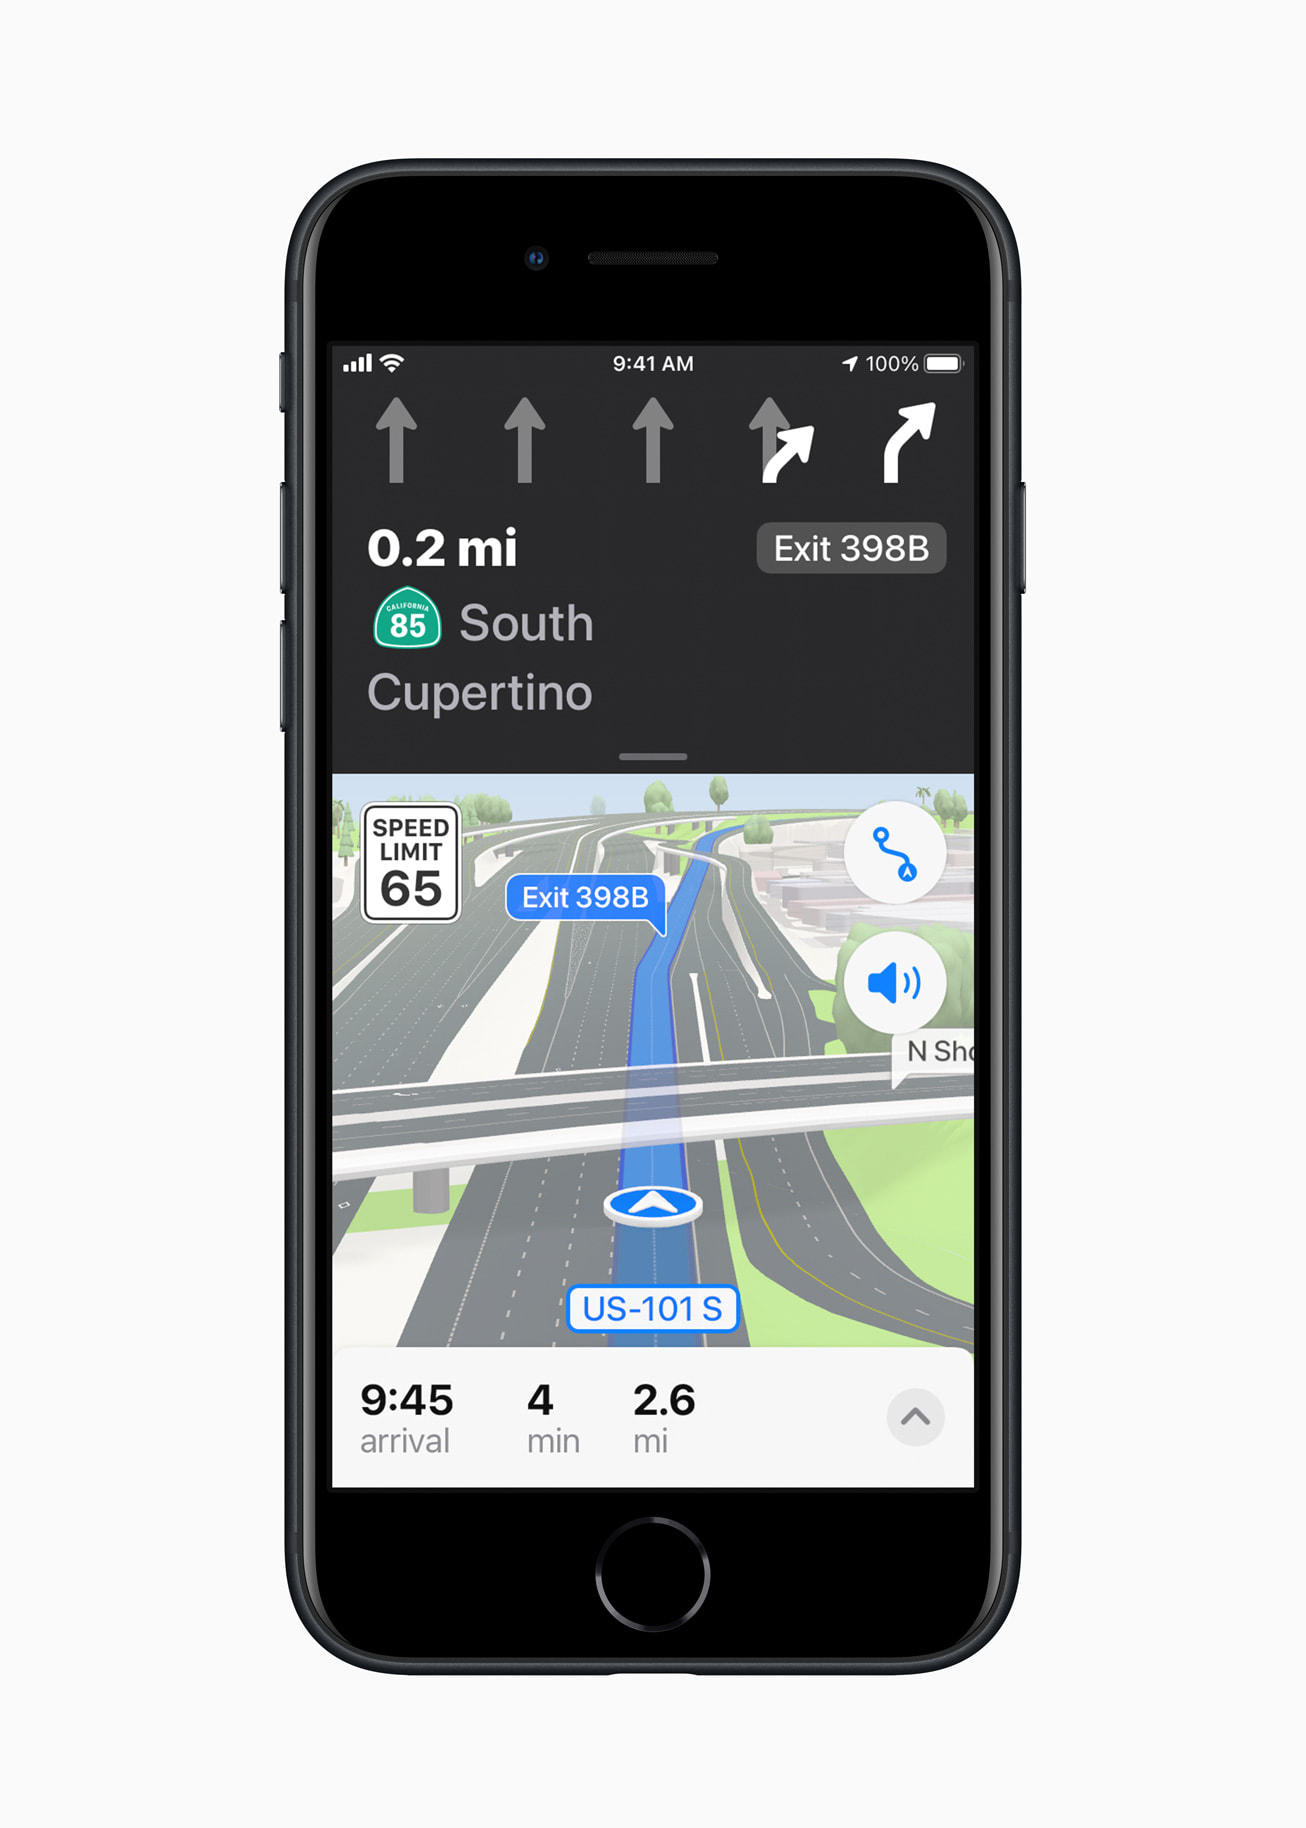 Il nuovo iPhone è in finitura a mezzanotte, visualizzando la nuova funzionalità dei piani iOS 15, che offre un'esperienza di guida urbana in tre dimensioni